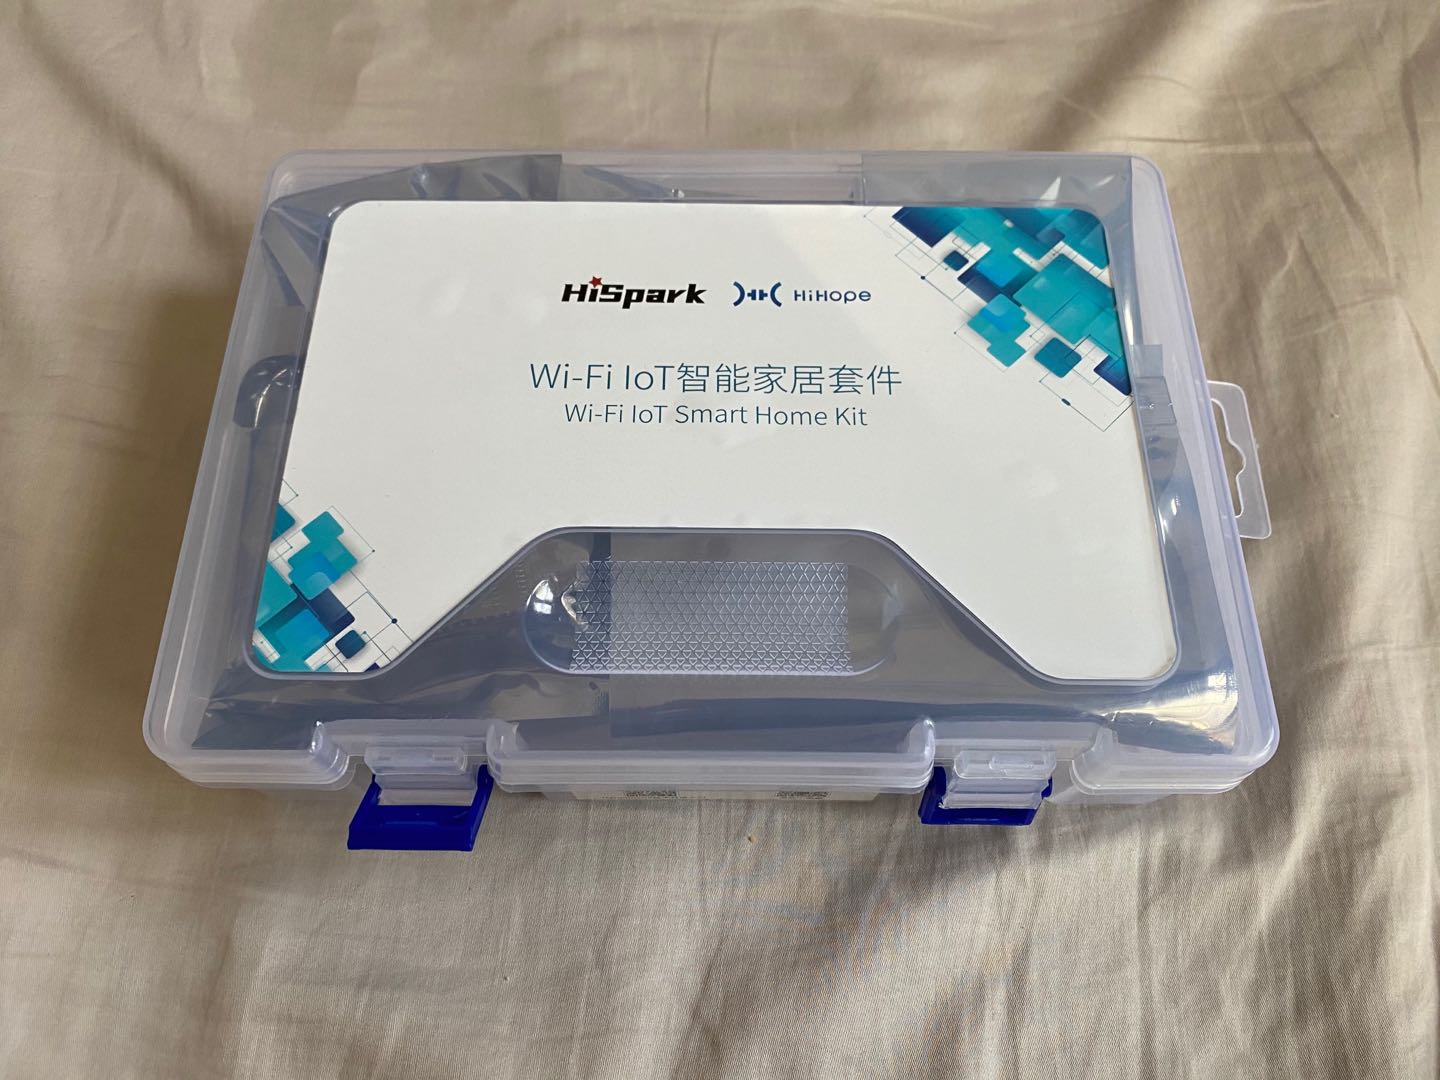 Wi-Fi IoT Hi3861套件开箱啦  -开源基础软件社区